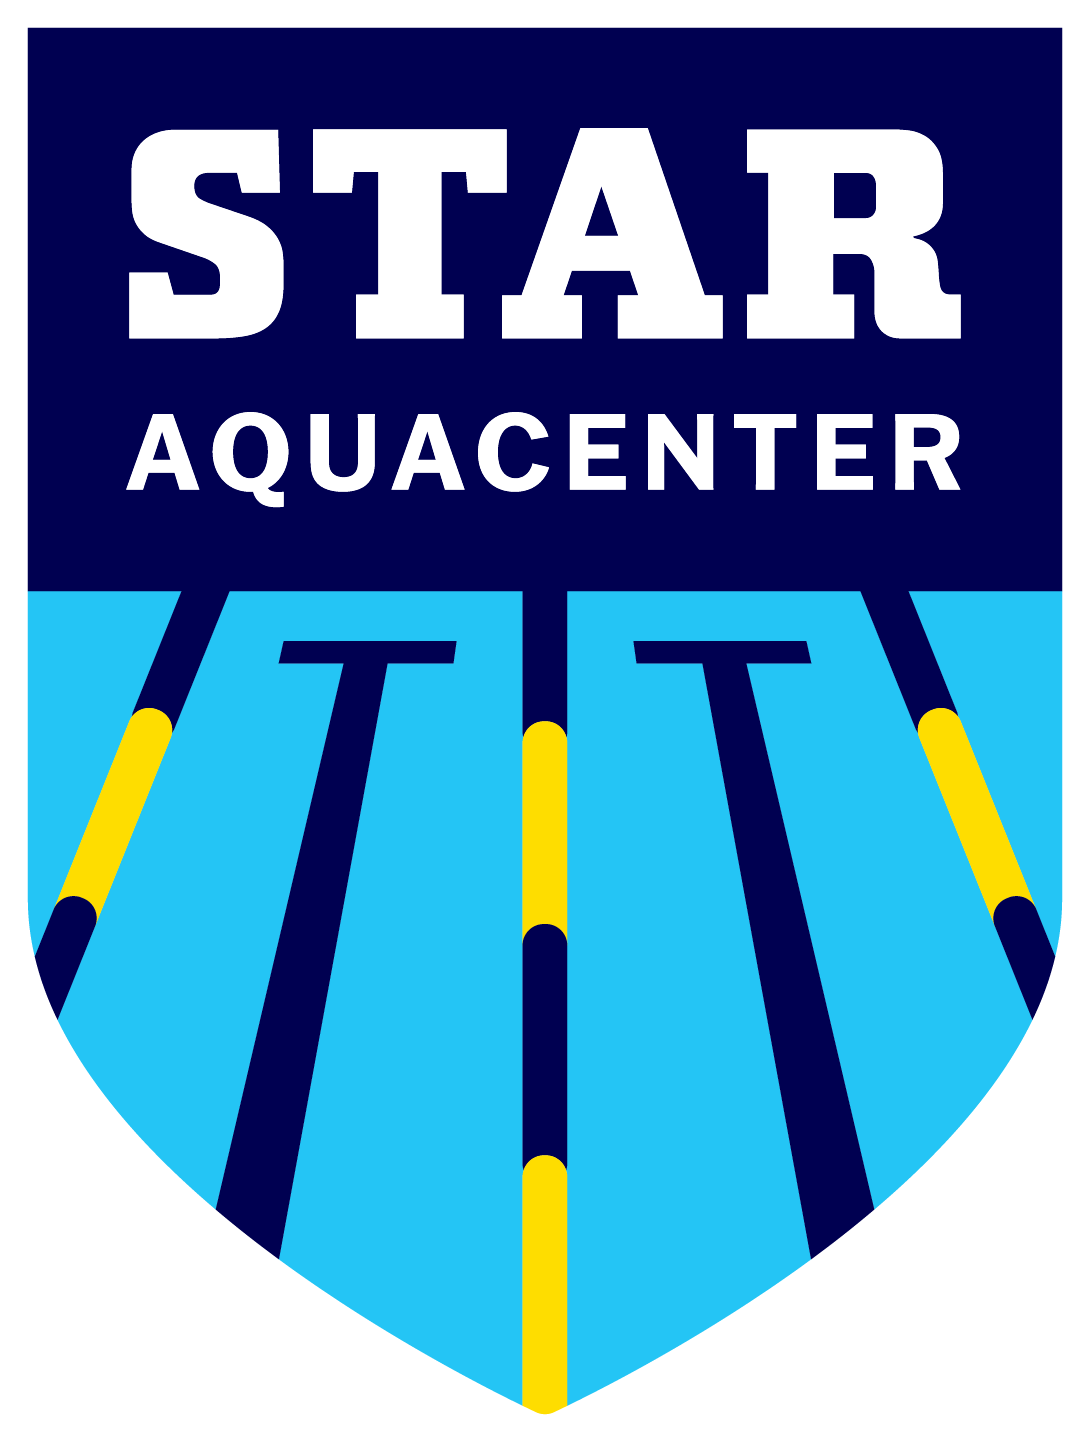 STAR AquaCenter Logo